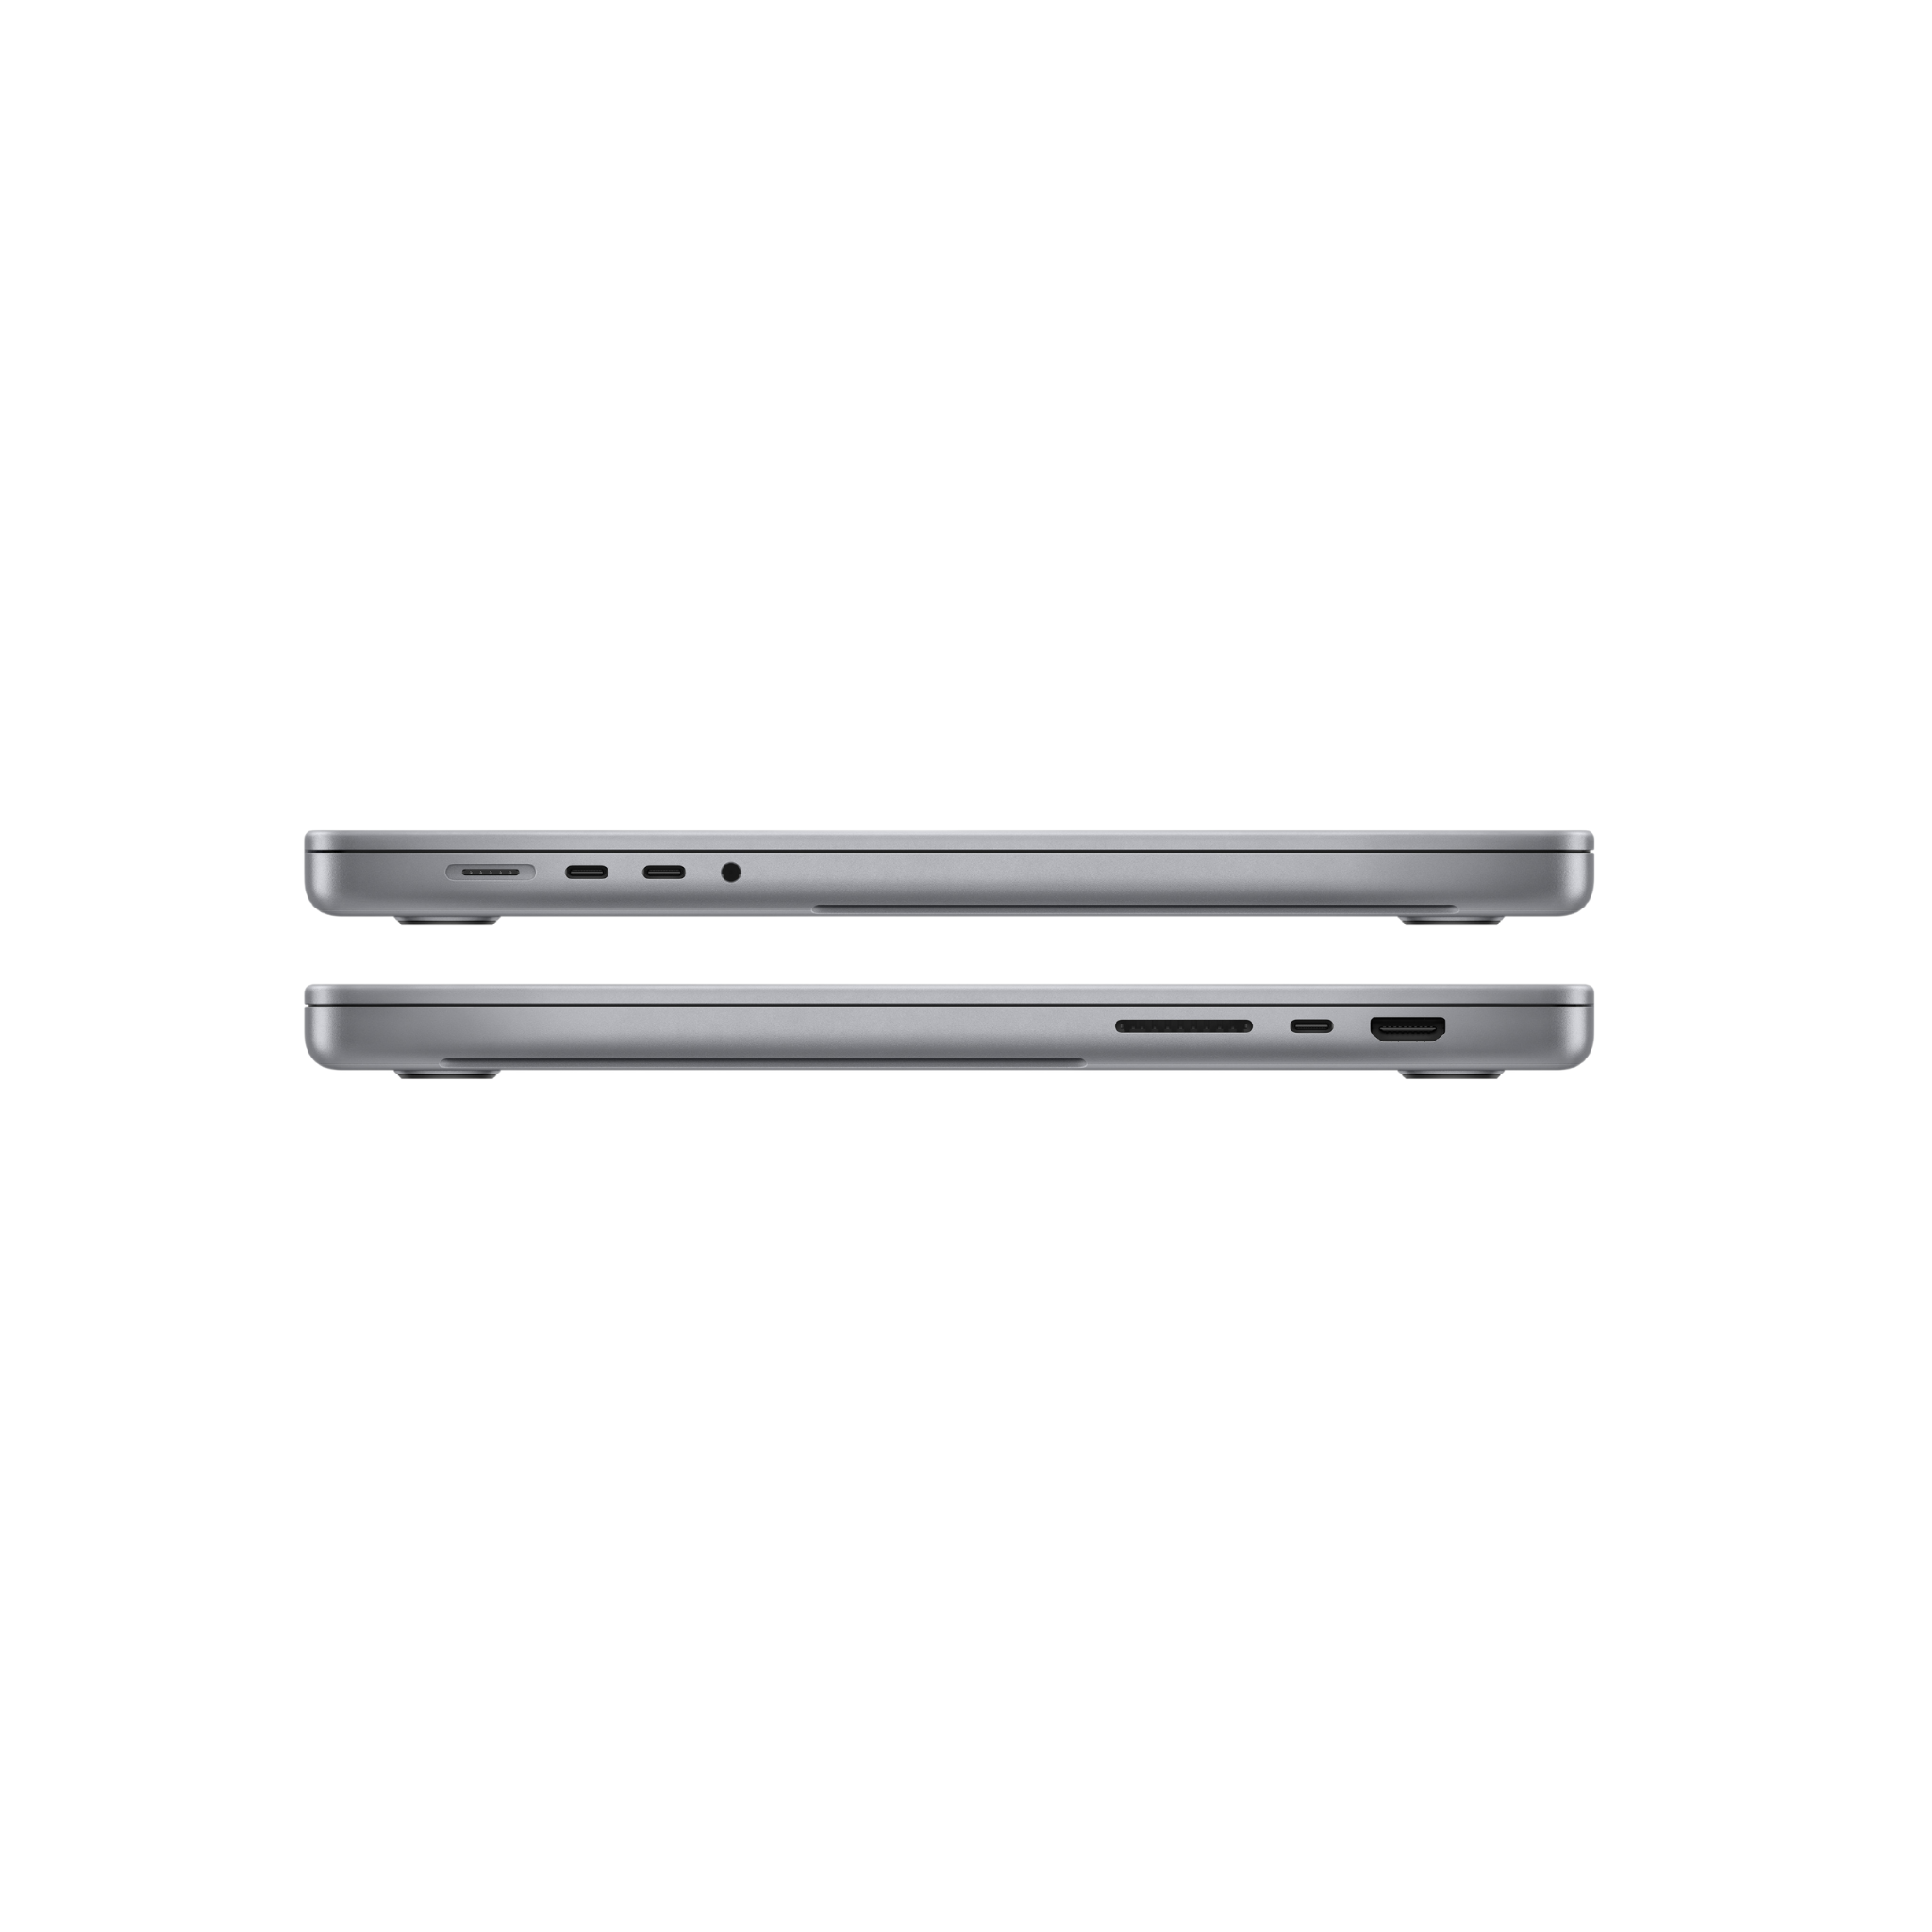 MacBook Pro 16-inch, 10-core CPU, 16-core GPU, 16-core Neural Engine - 1TB SSD Storage (Space Grey)